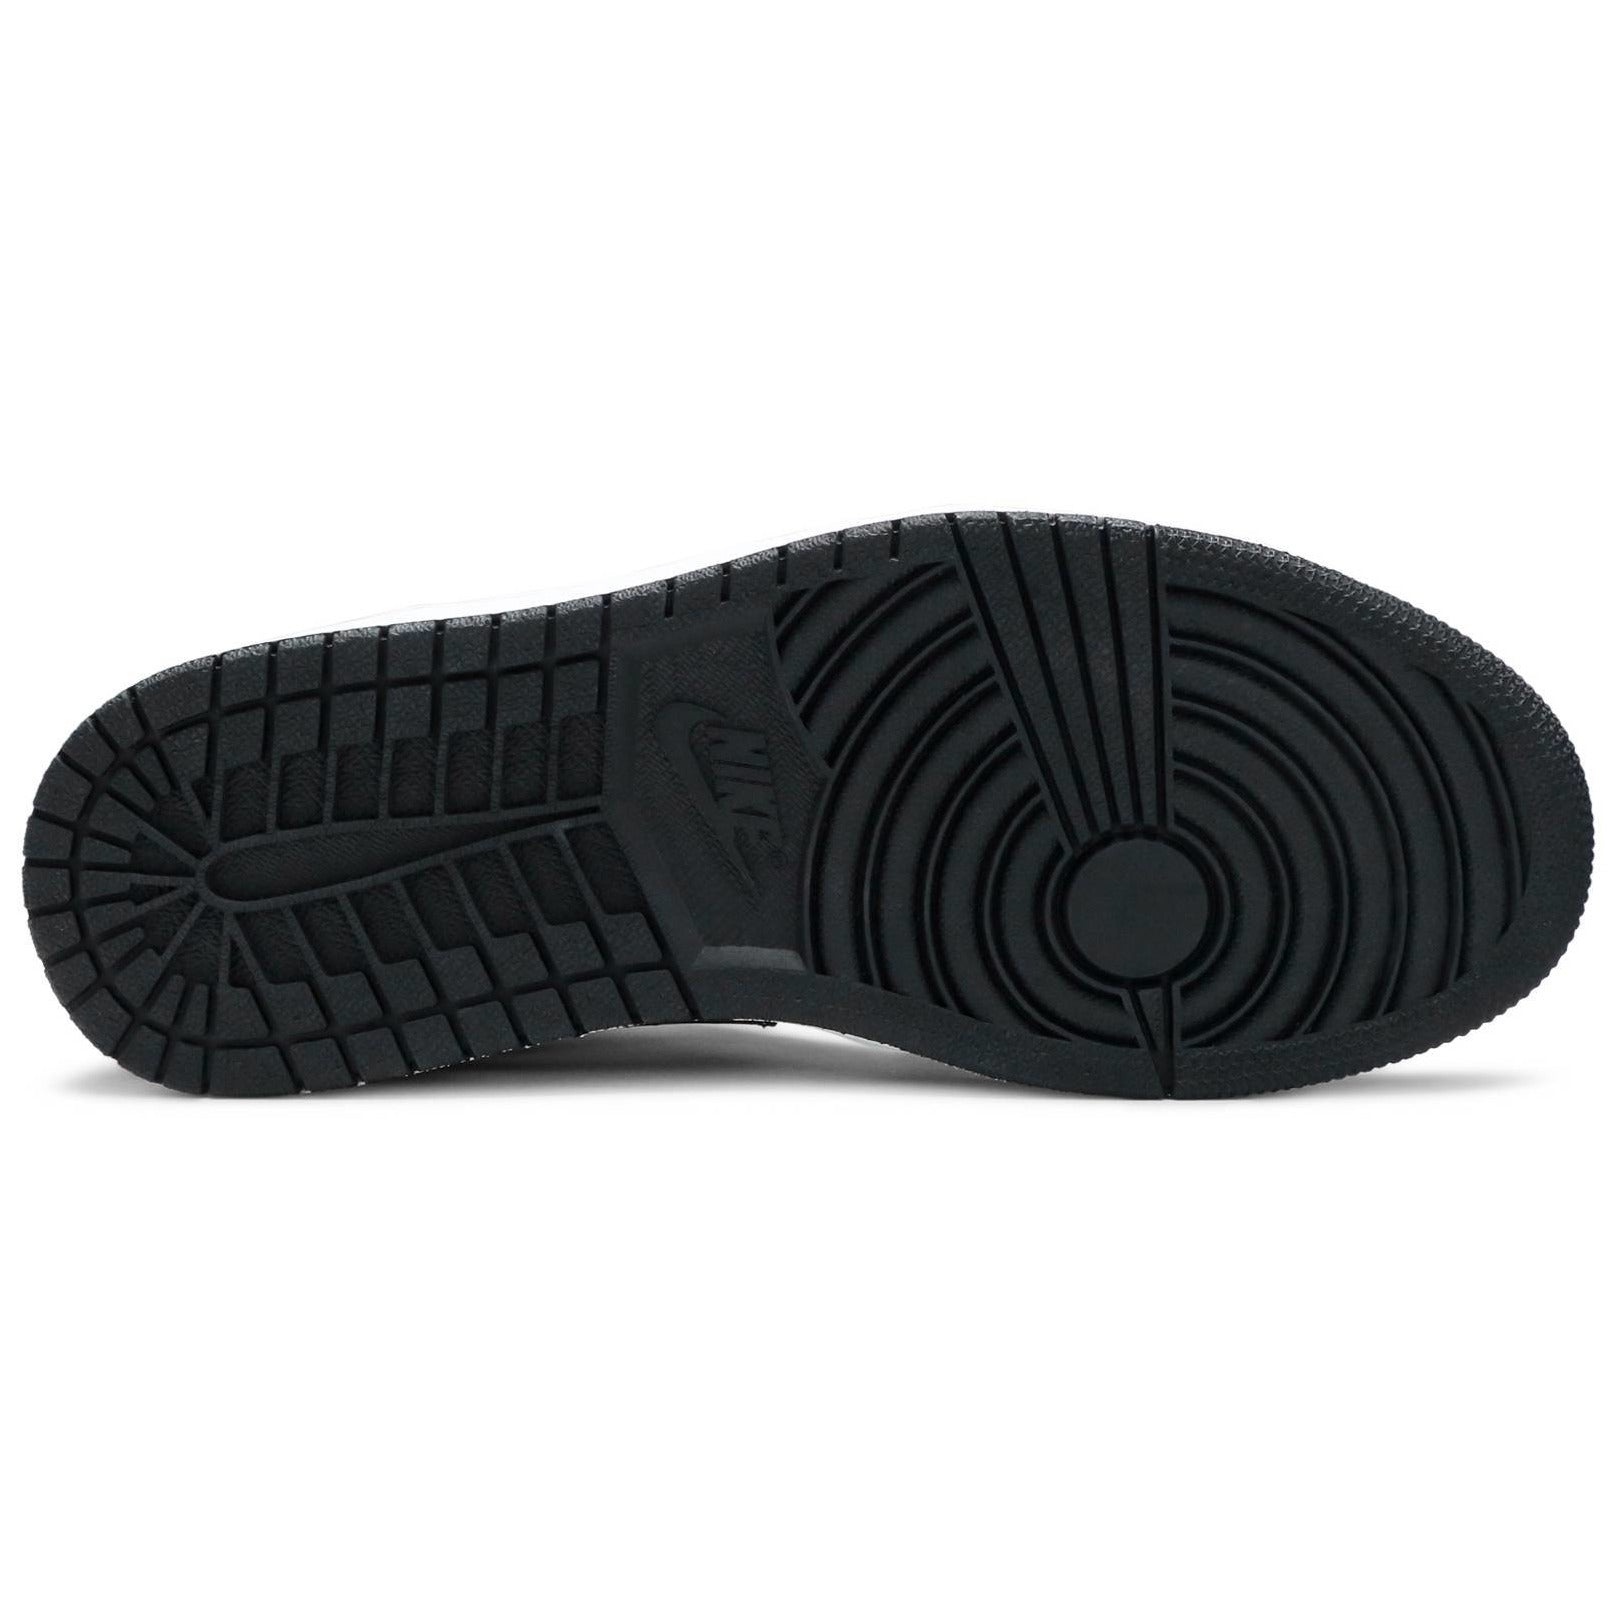 Nike Air Jordan 1 Mid SE Union Black Toe Men's